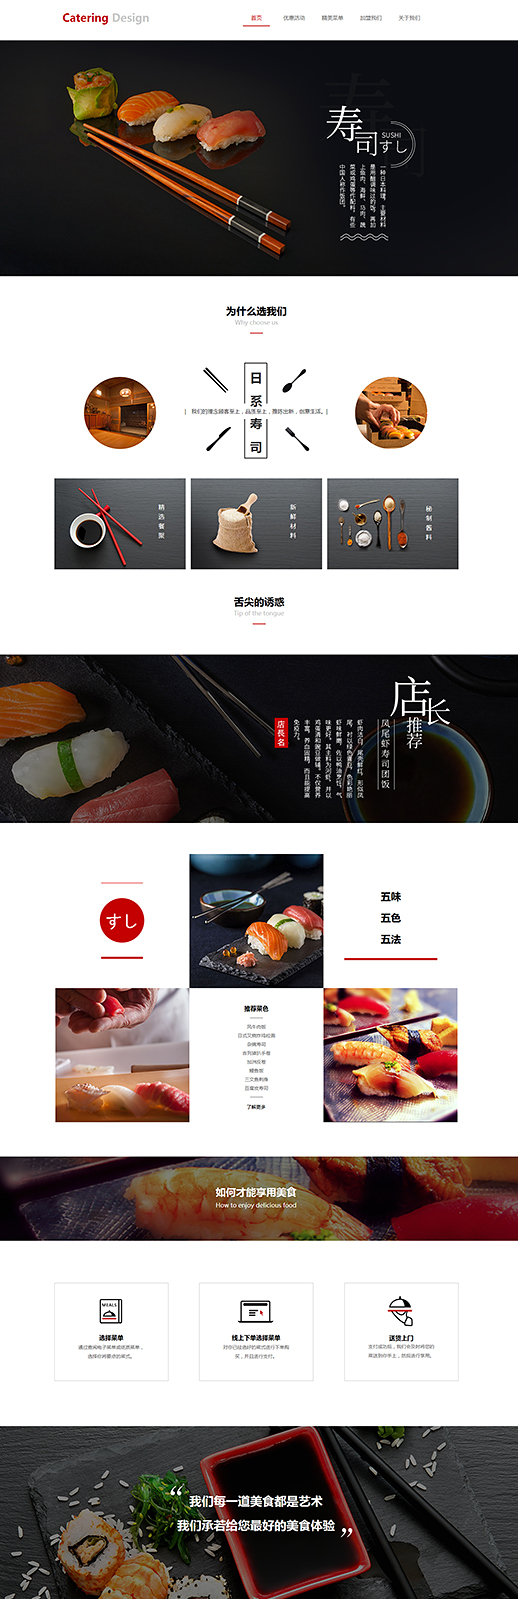 日式餐饮寿司店公司模板